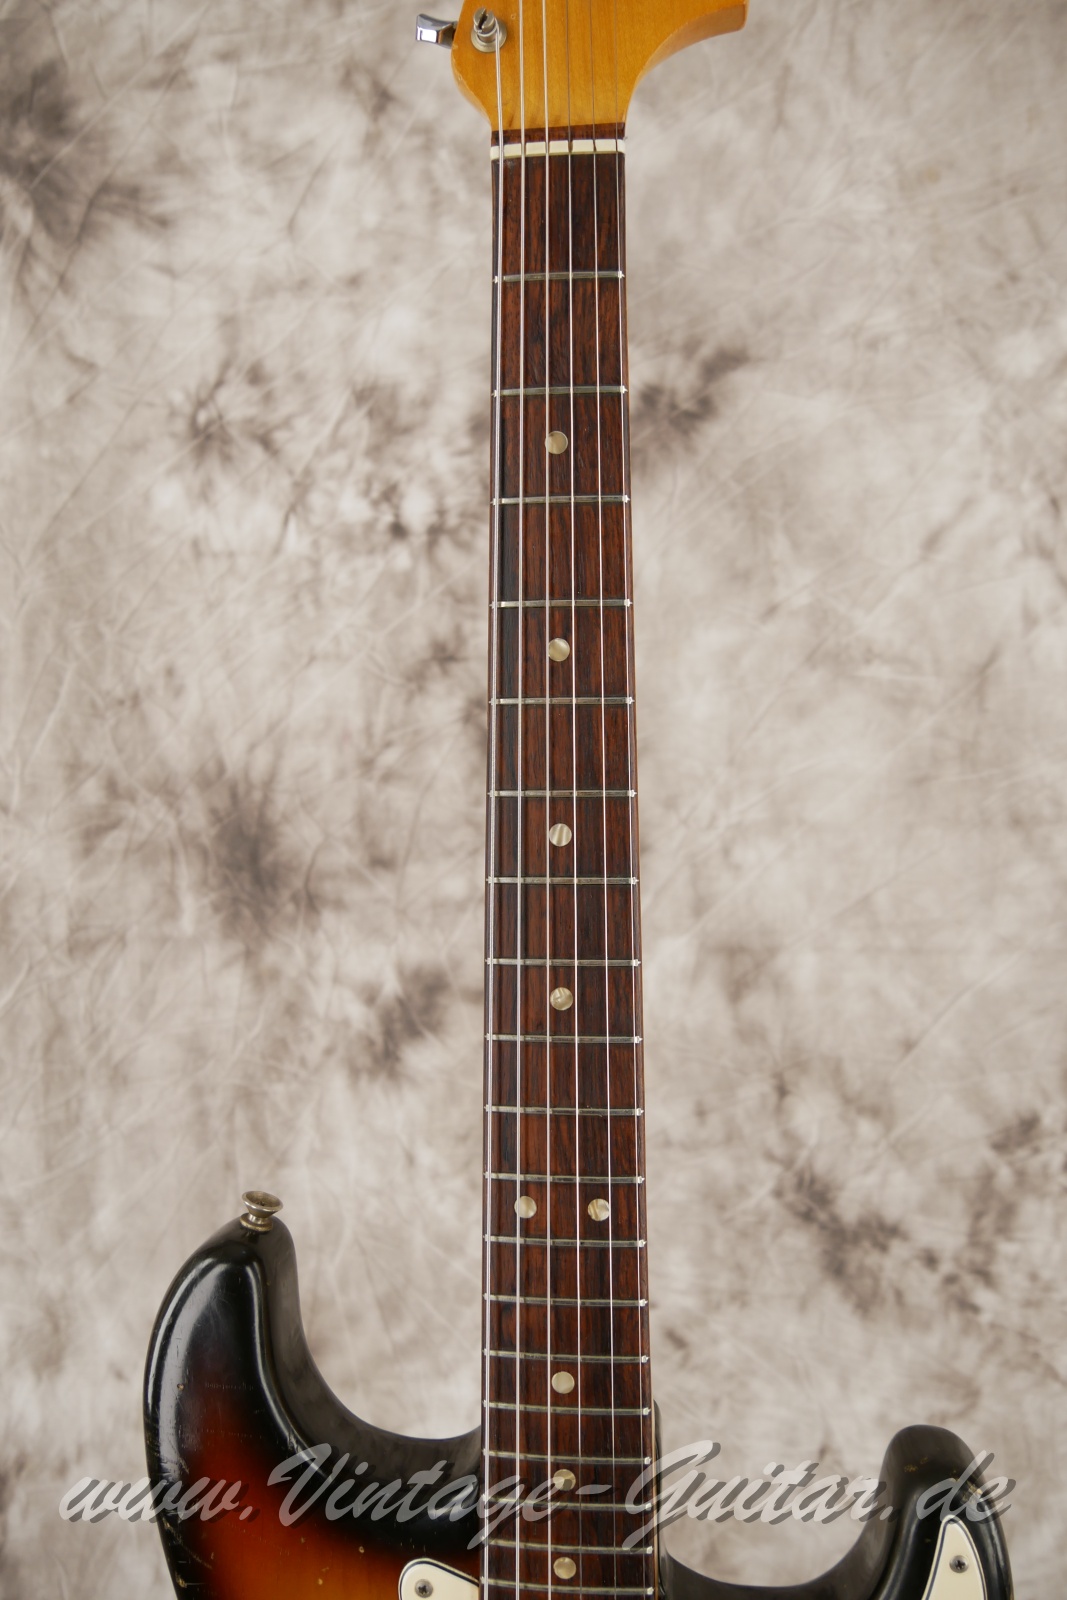 Fender_Stratocaster_sunburst_4hole_1971-005.JPG